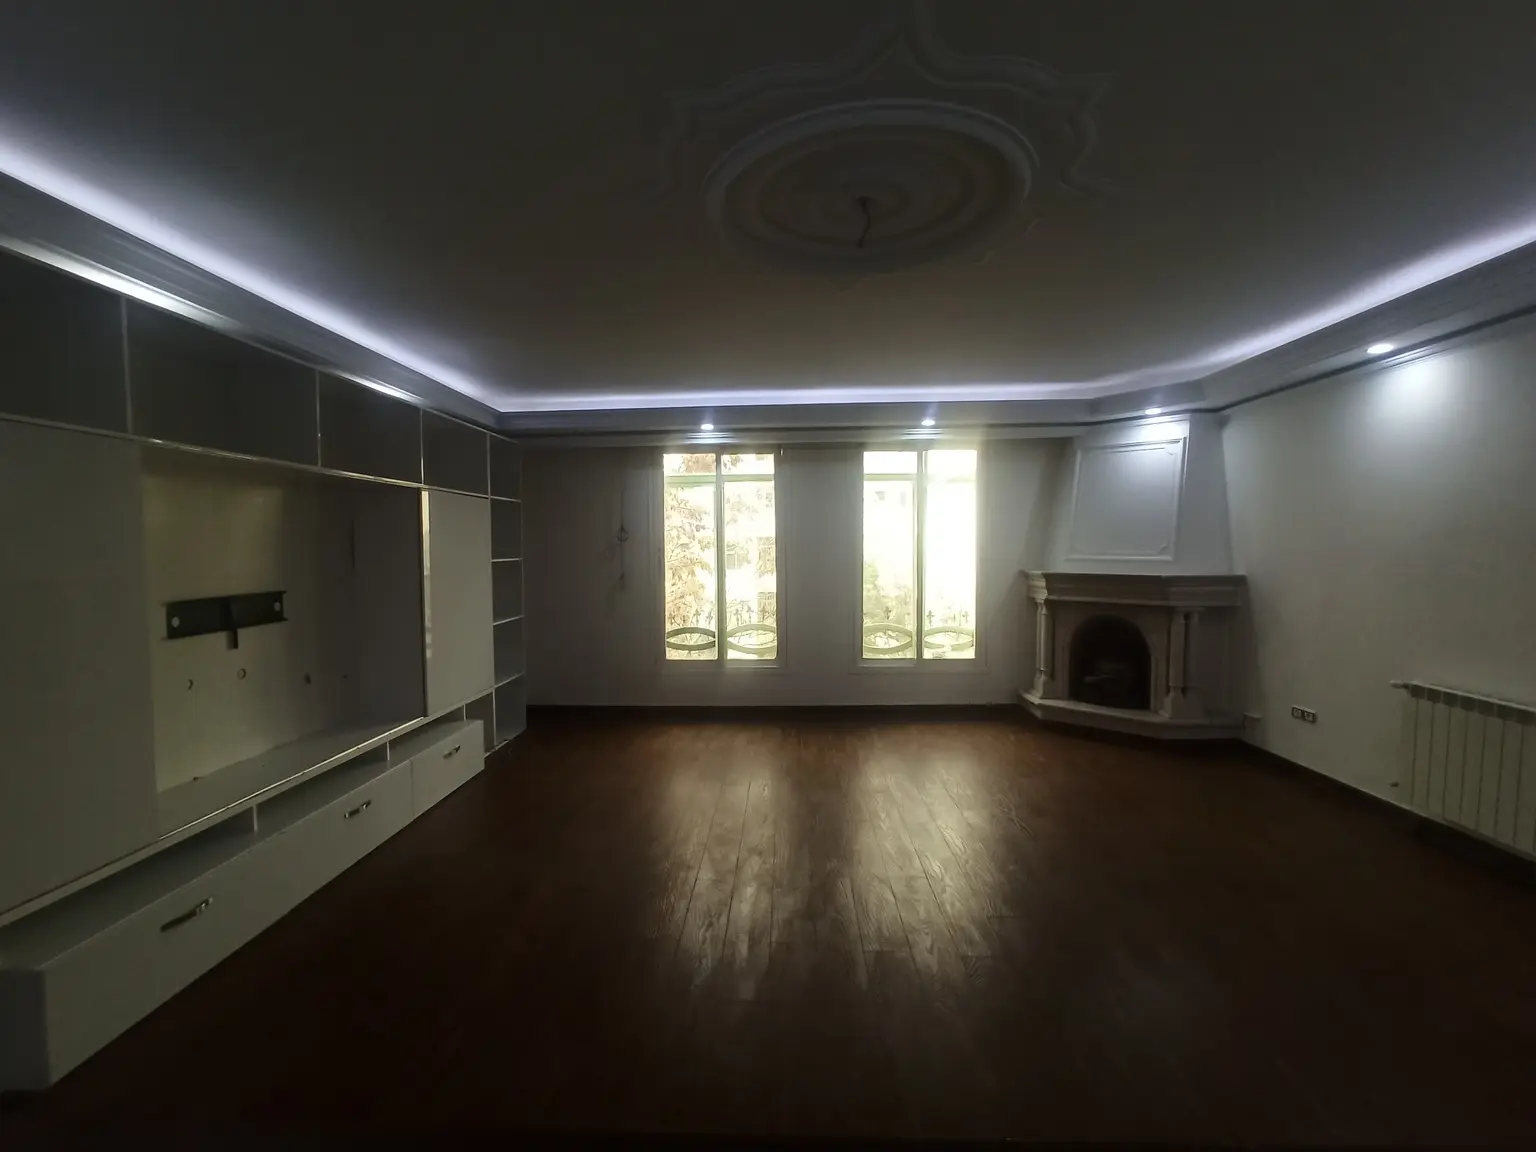   خرید آپارتمان 148 متر 3 خوابه در سعادت آباد علامه شمالی 